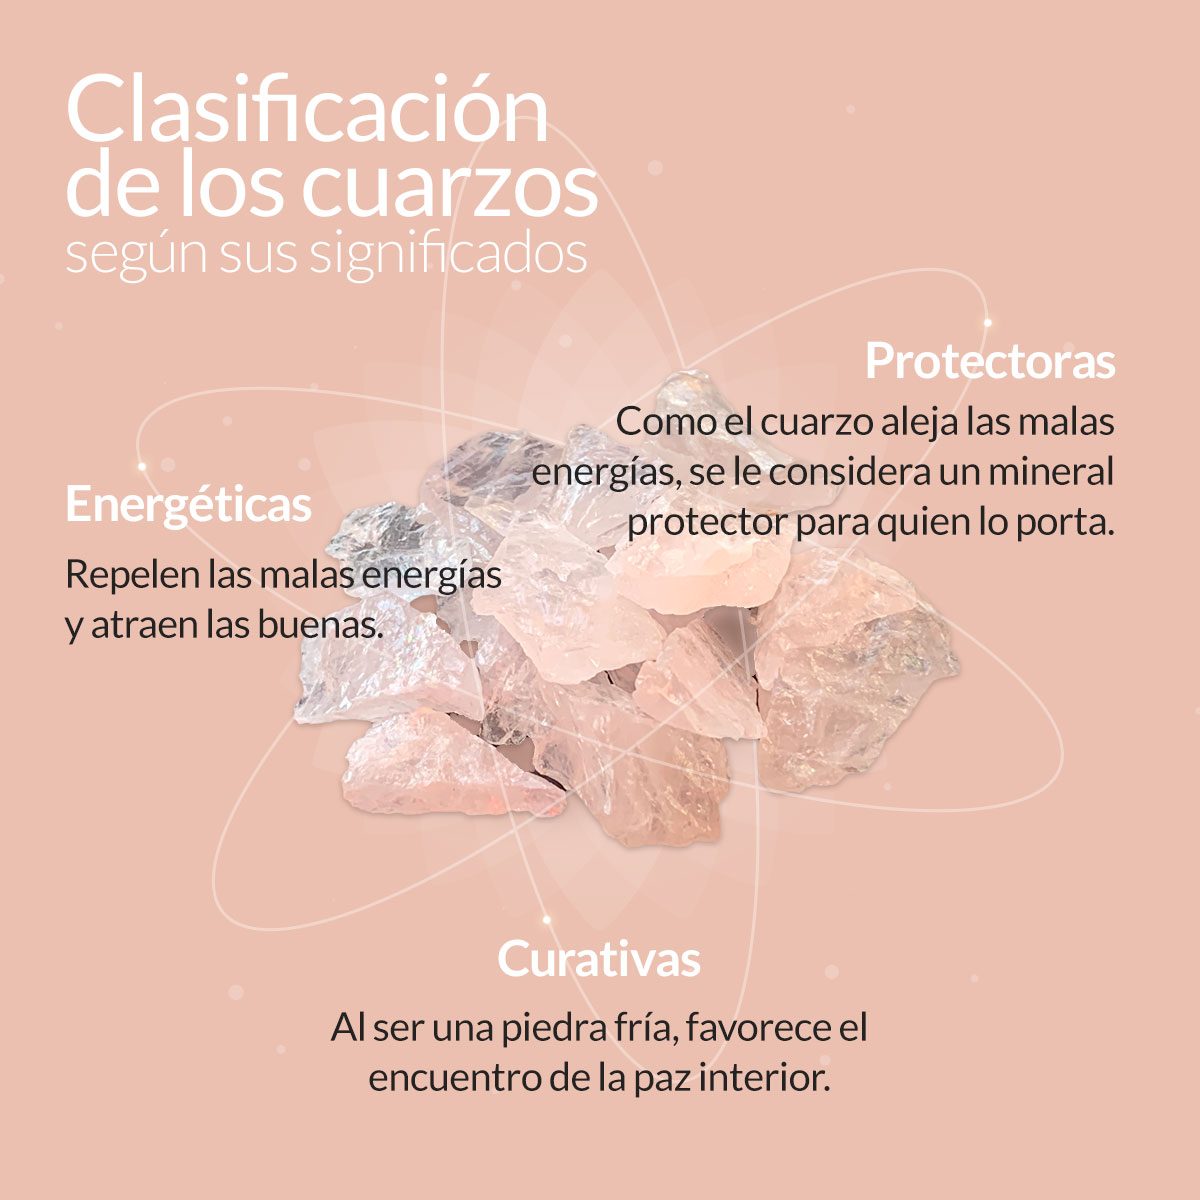 Infografia sobre los cuarzos y su significado segun sus colores